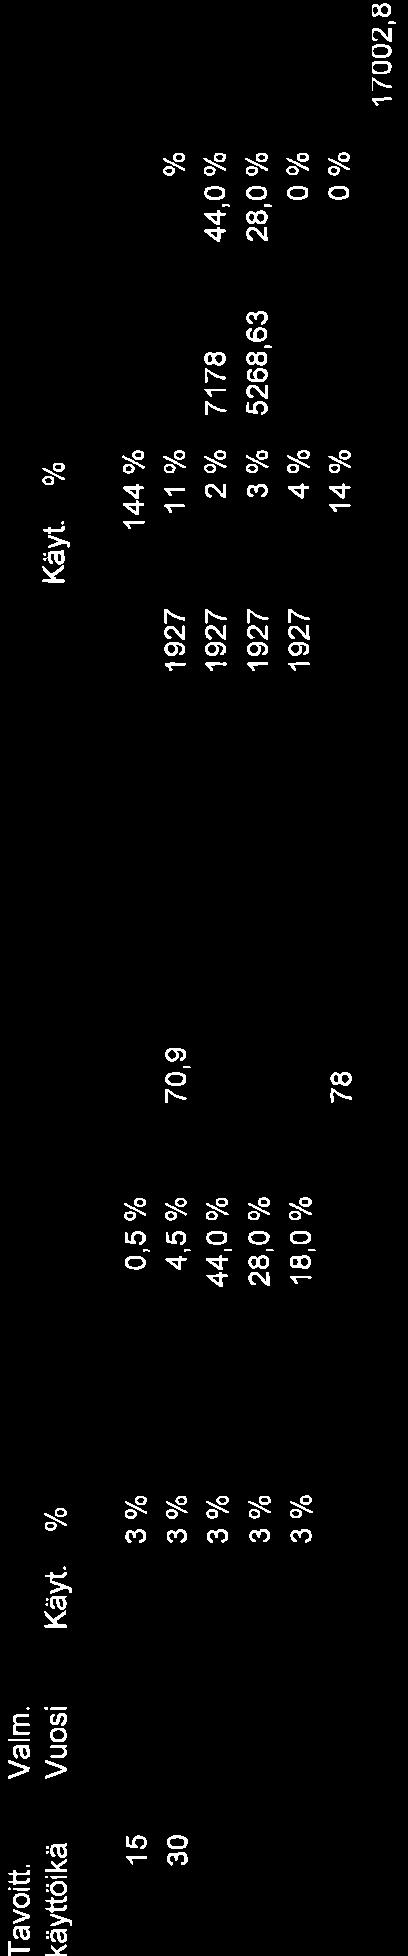 Vuosi JA1 '1959 1 959 1 959 1 959 '1959 I 959 KäyL.